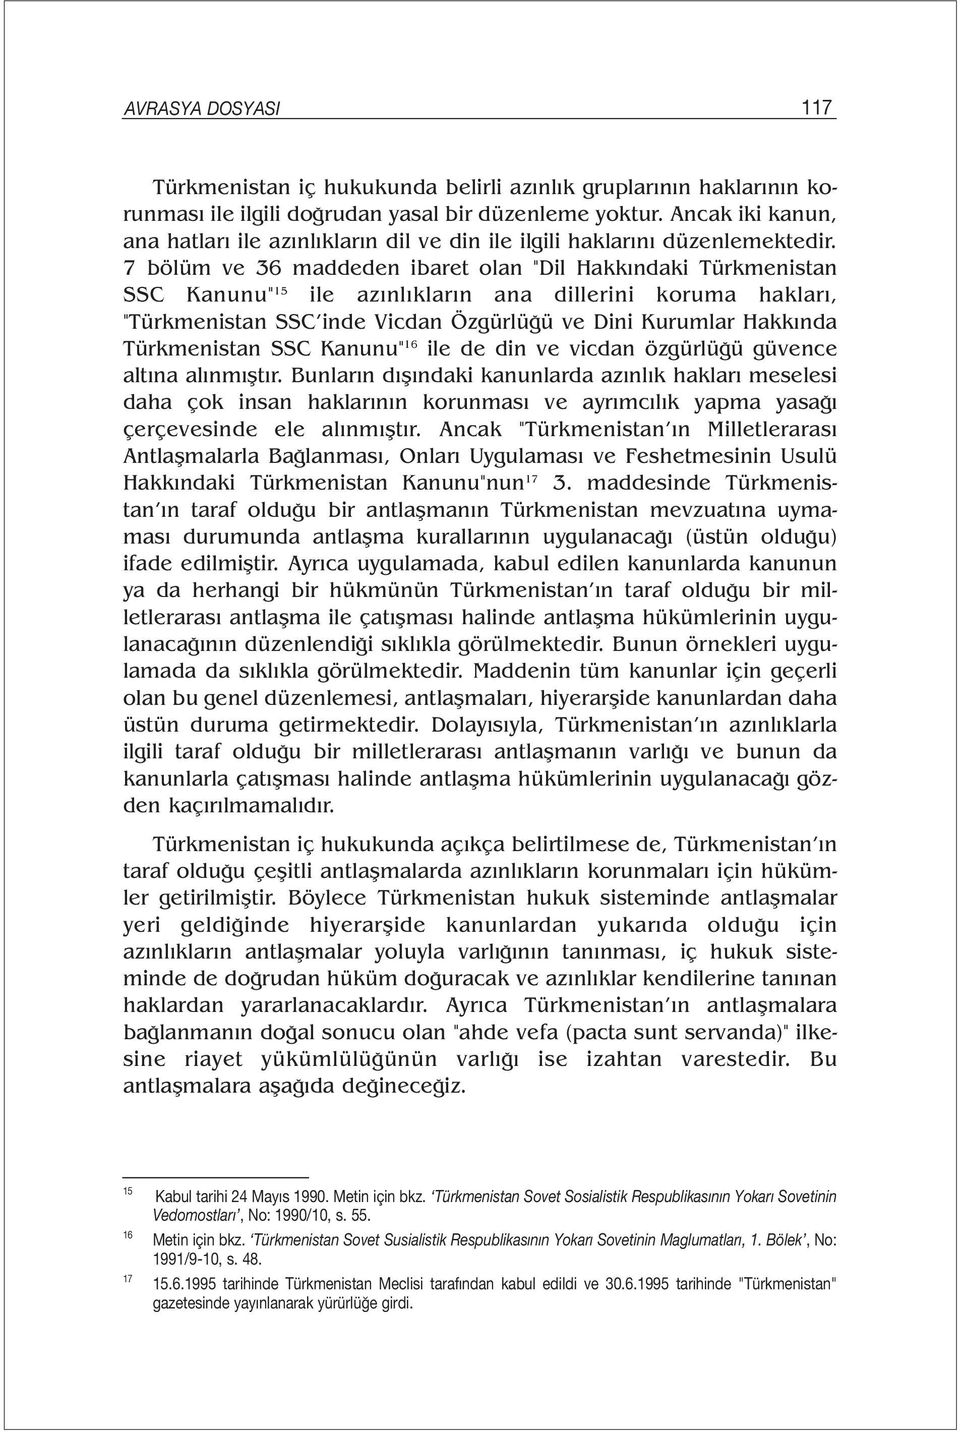 7 bölüm ve 36 maddeden ibaret olan "Dil Hakkındaki Türkmenistan SSC Kanunu" 15 ile azınlıkların ana dillerini koruma hakları, "Türkmenistan SSC inde Vicdan Özgürlüğü ve Dini Kurumlar Hakkında